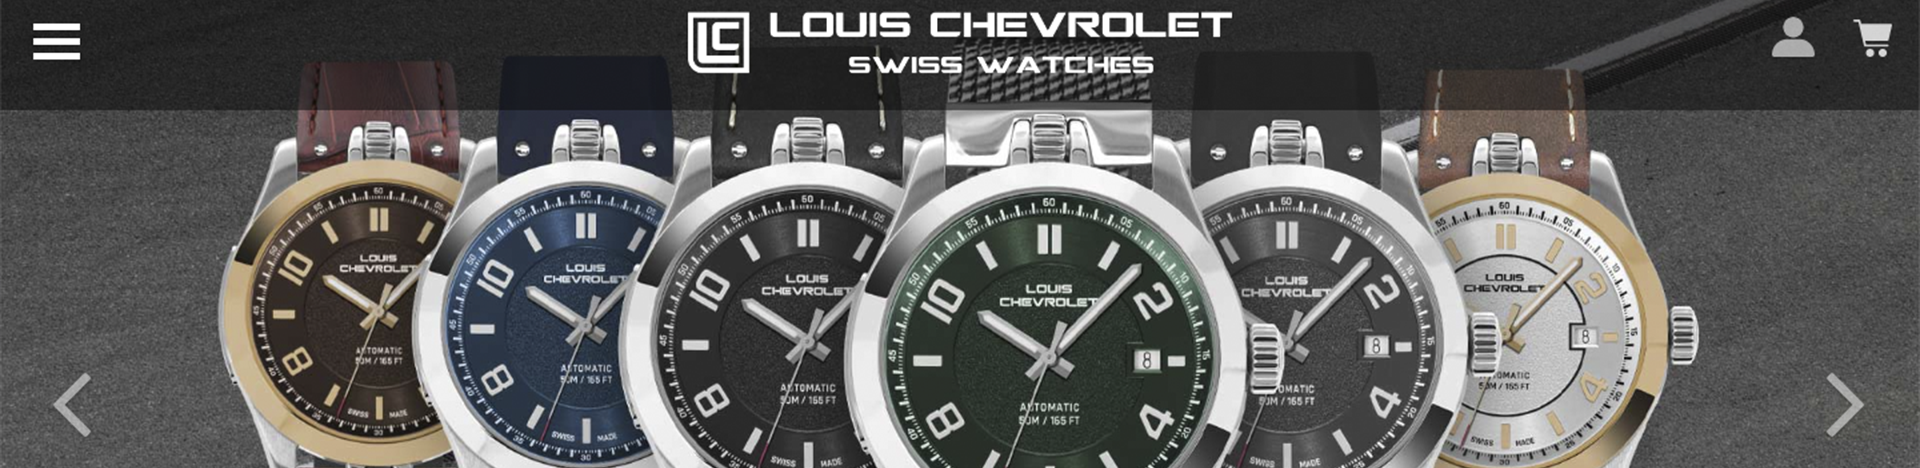 Création de site web Louis Chevrolet Swiss Watches